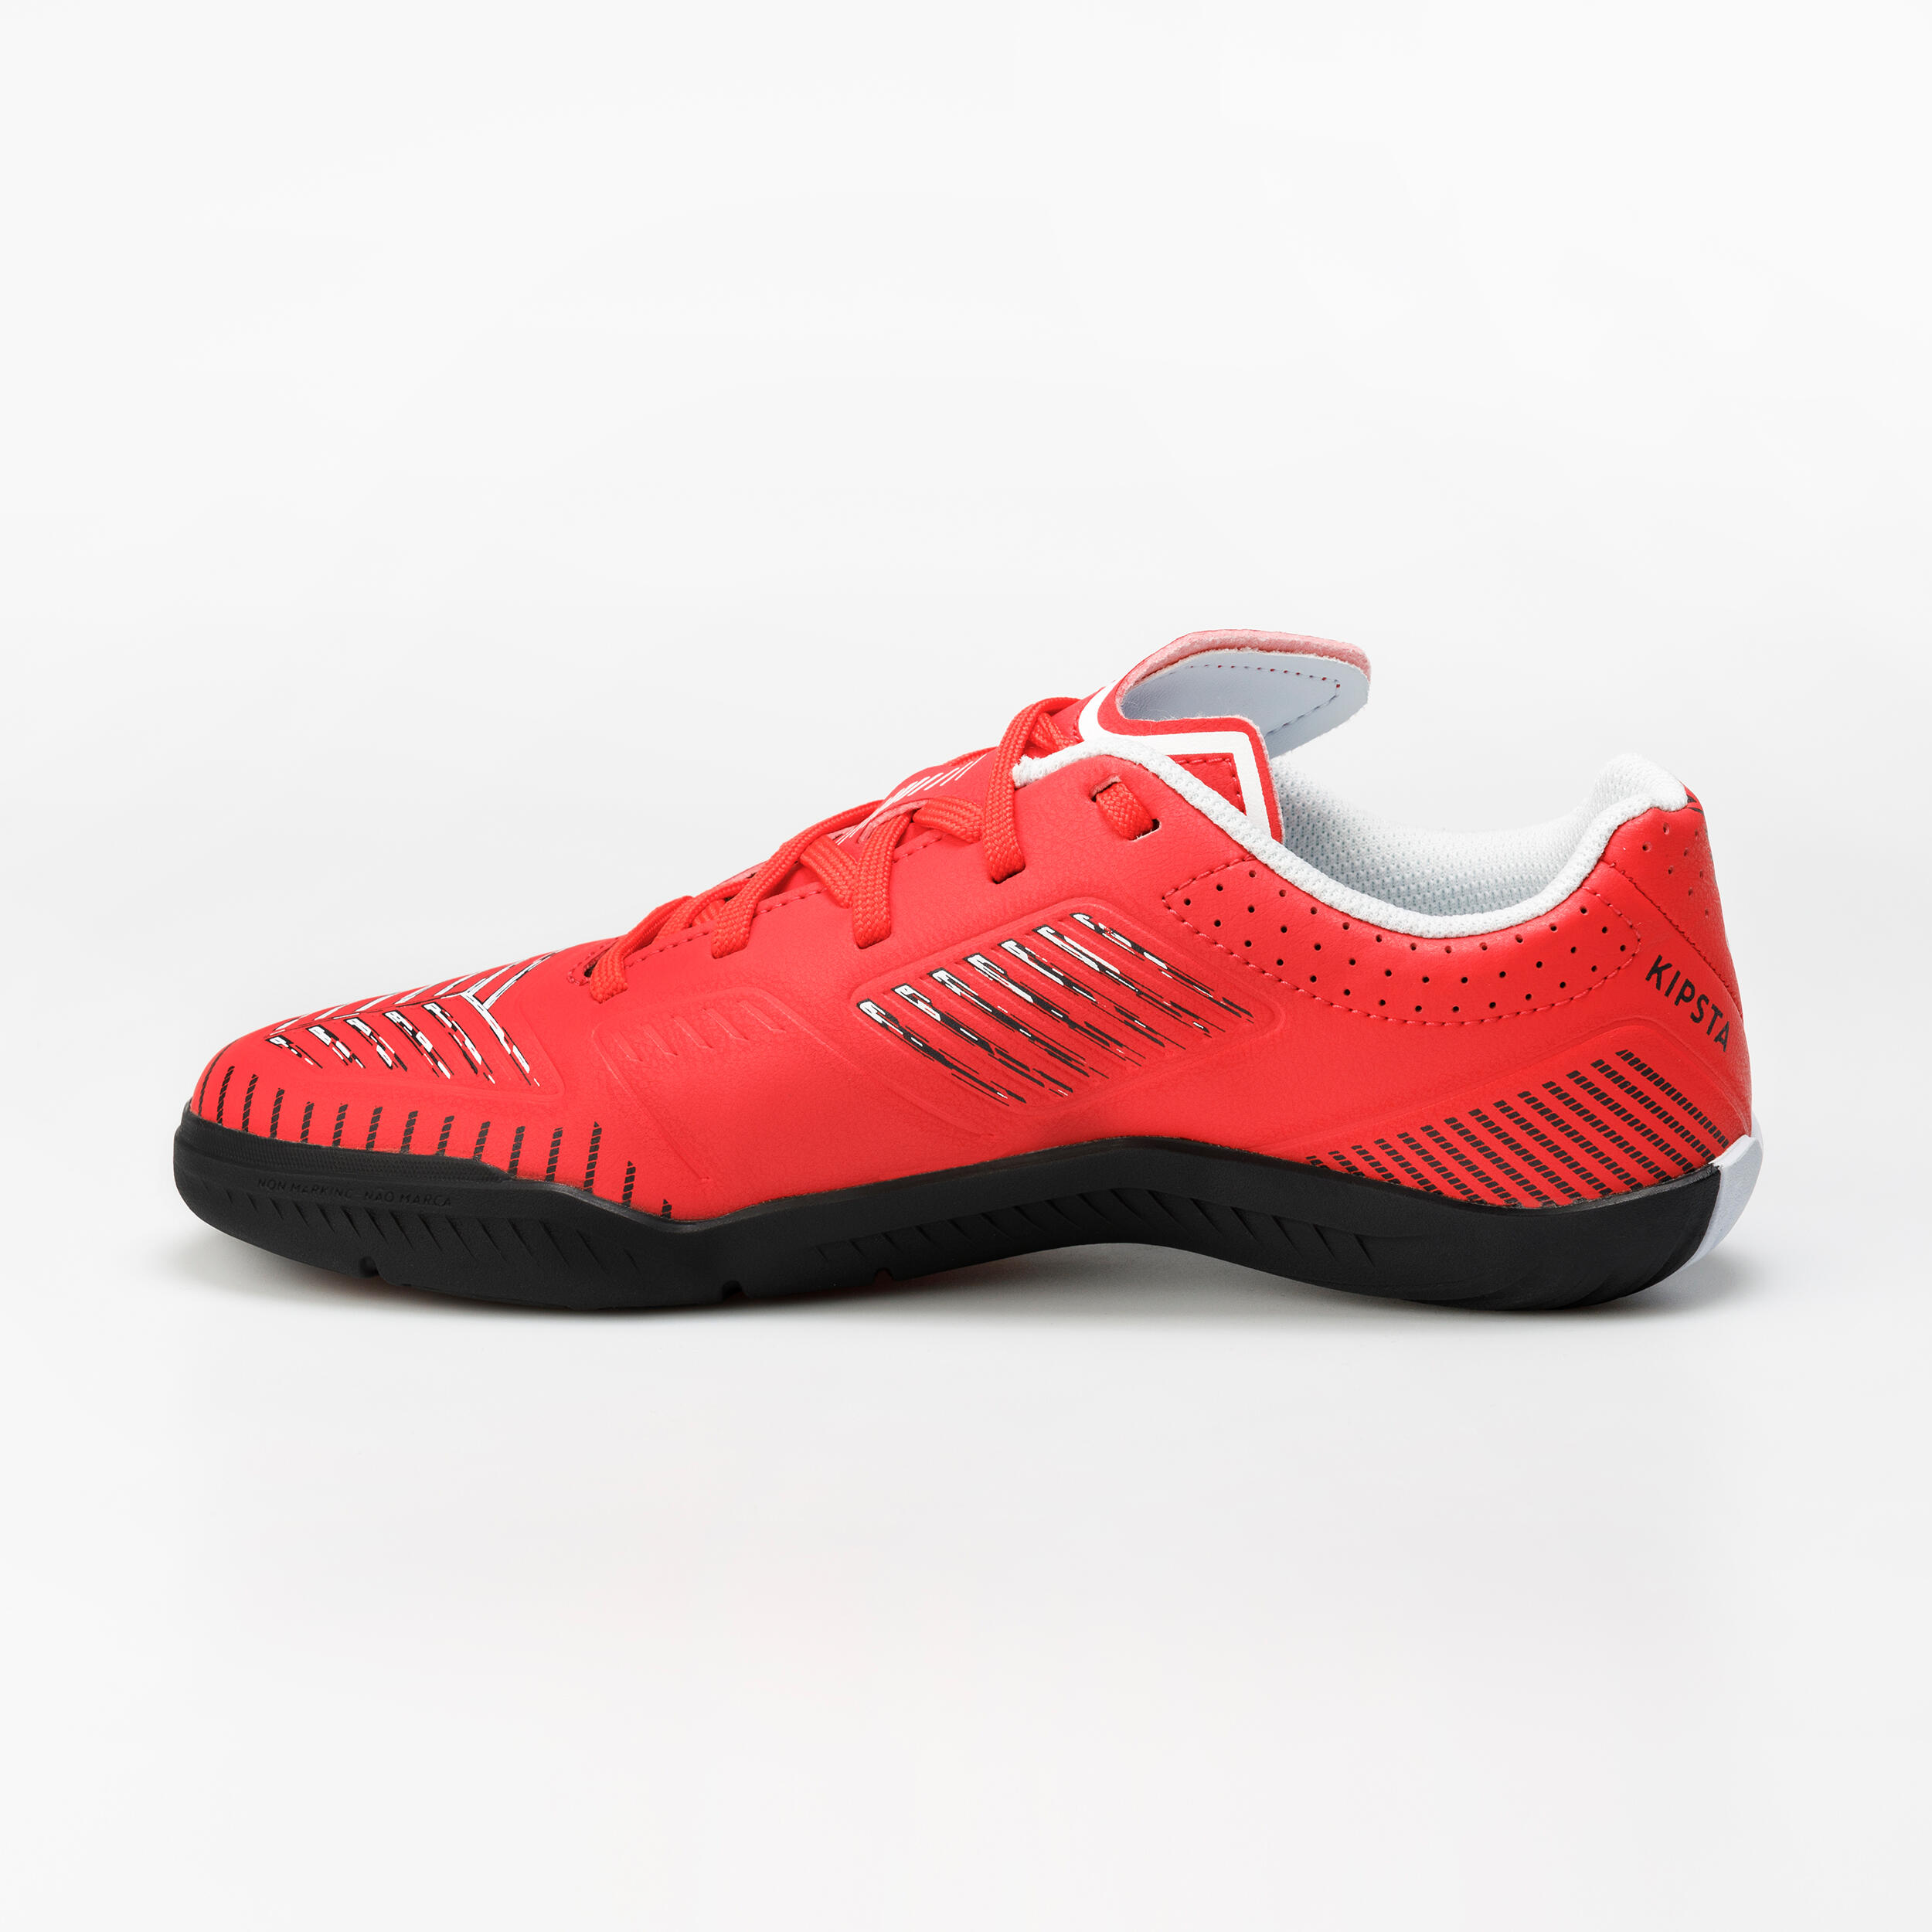 Kids' Indoor Soccer Shoes - Ginka 500 Red/Black - KIPSTA